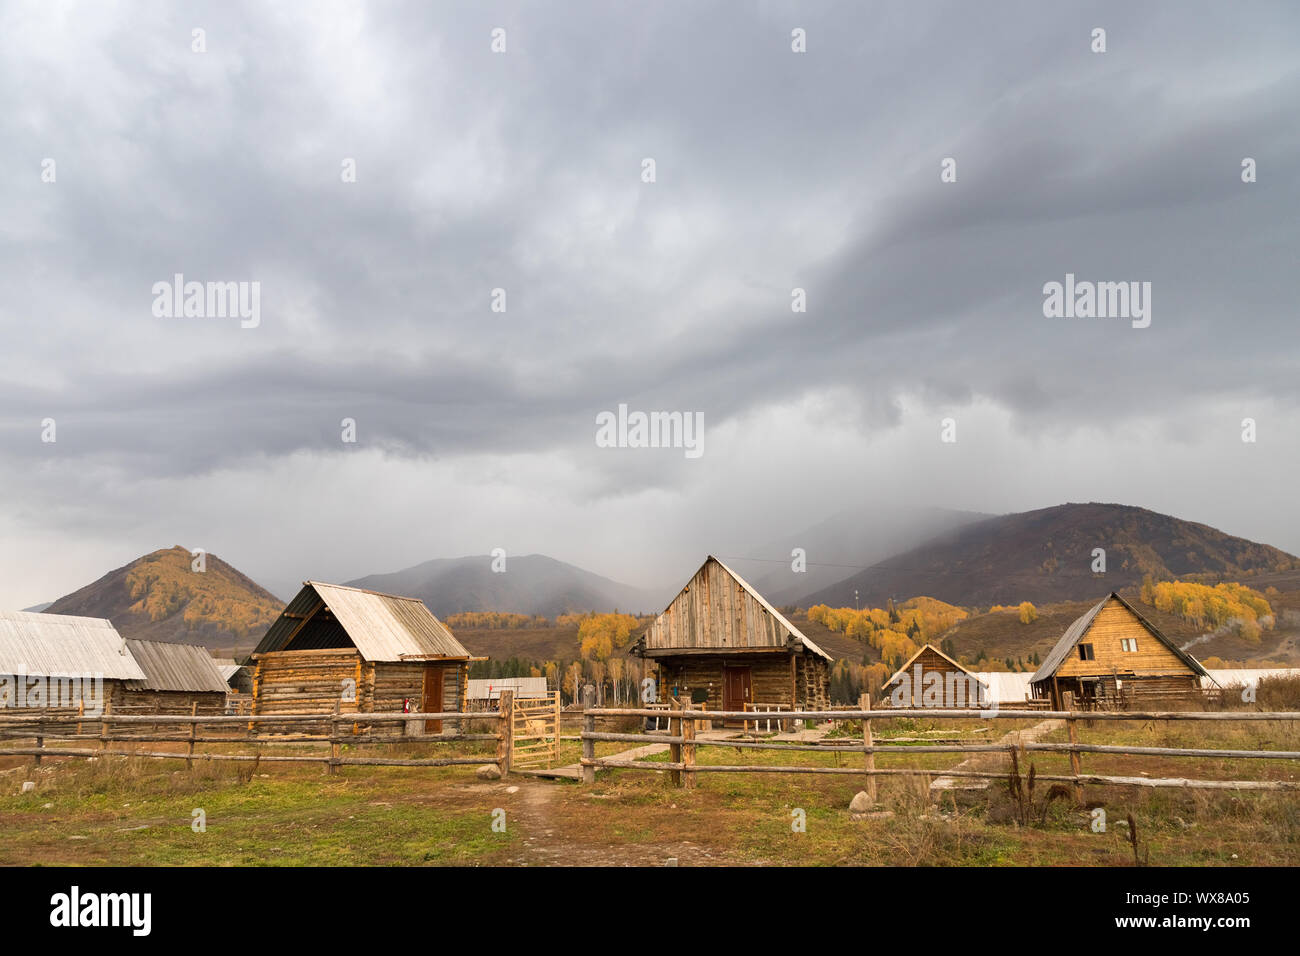 xinjiang log cabin in autumn Stock Photo